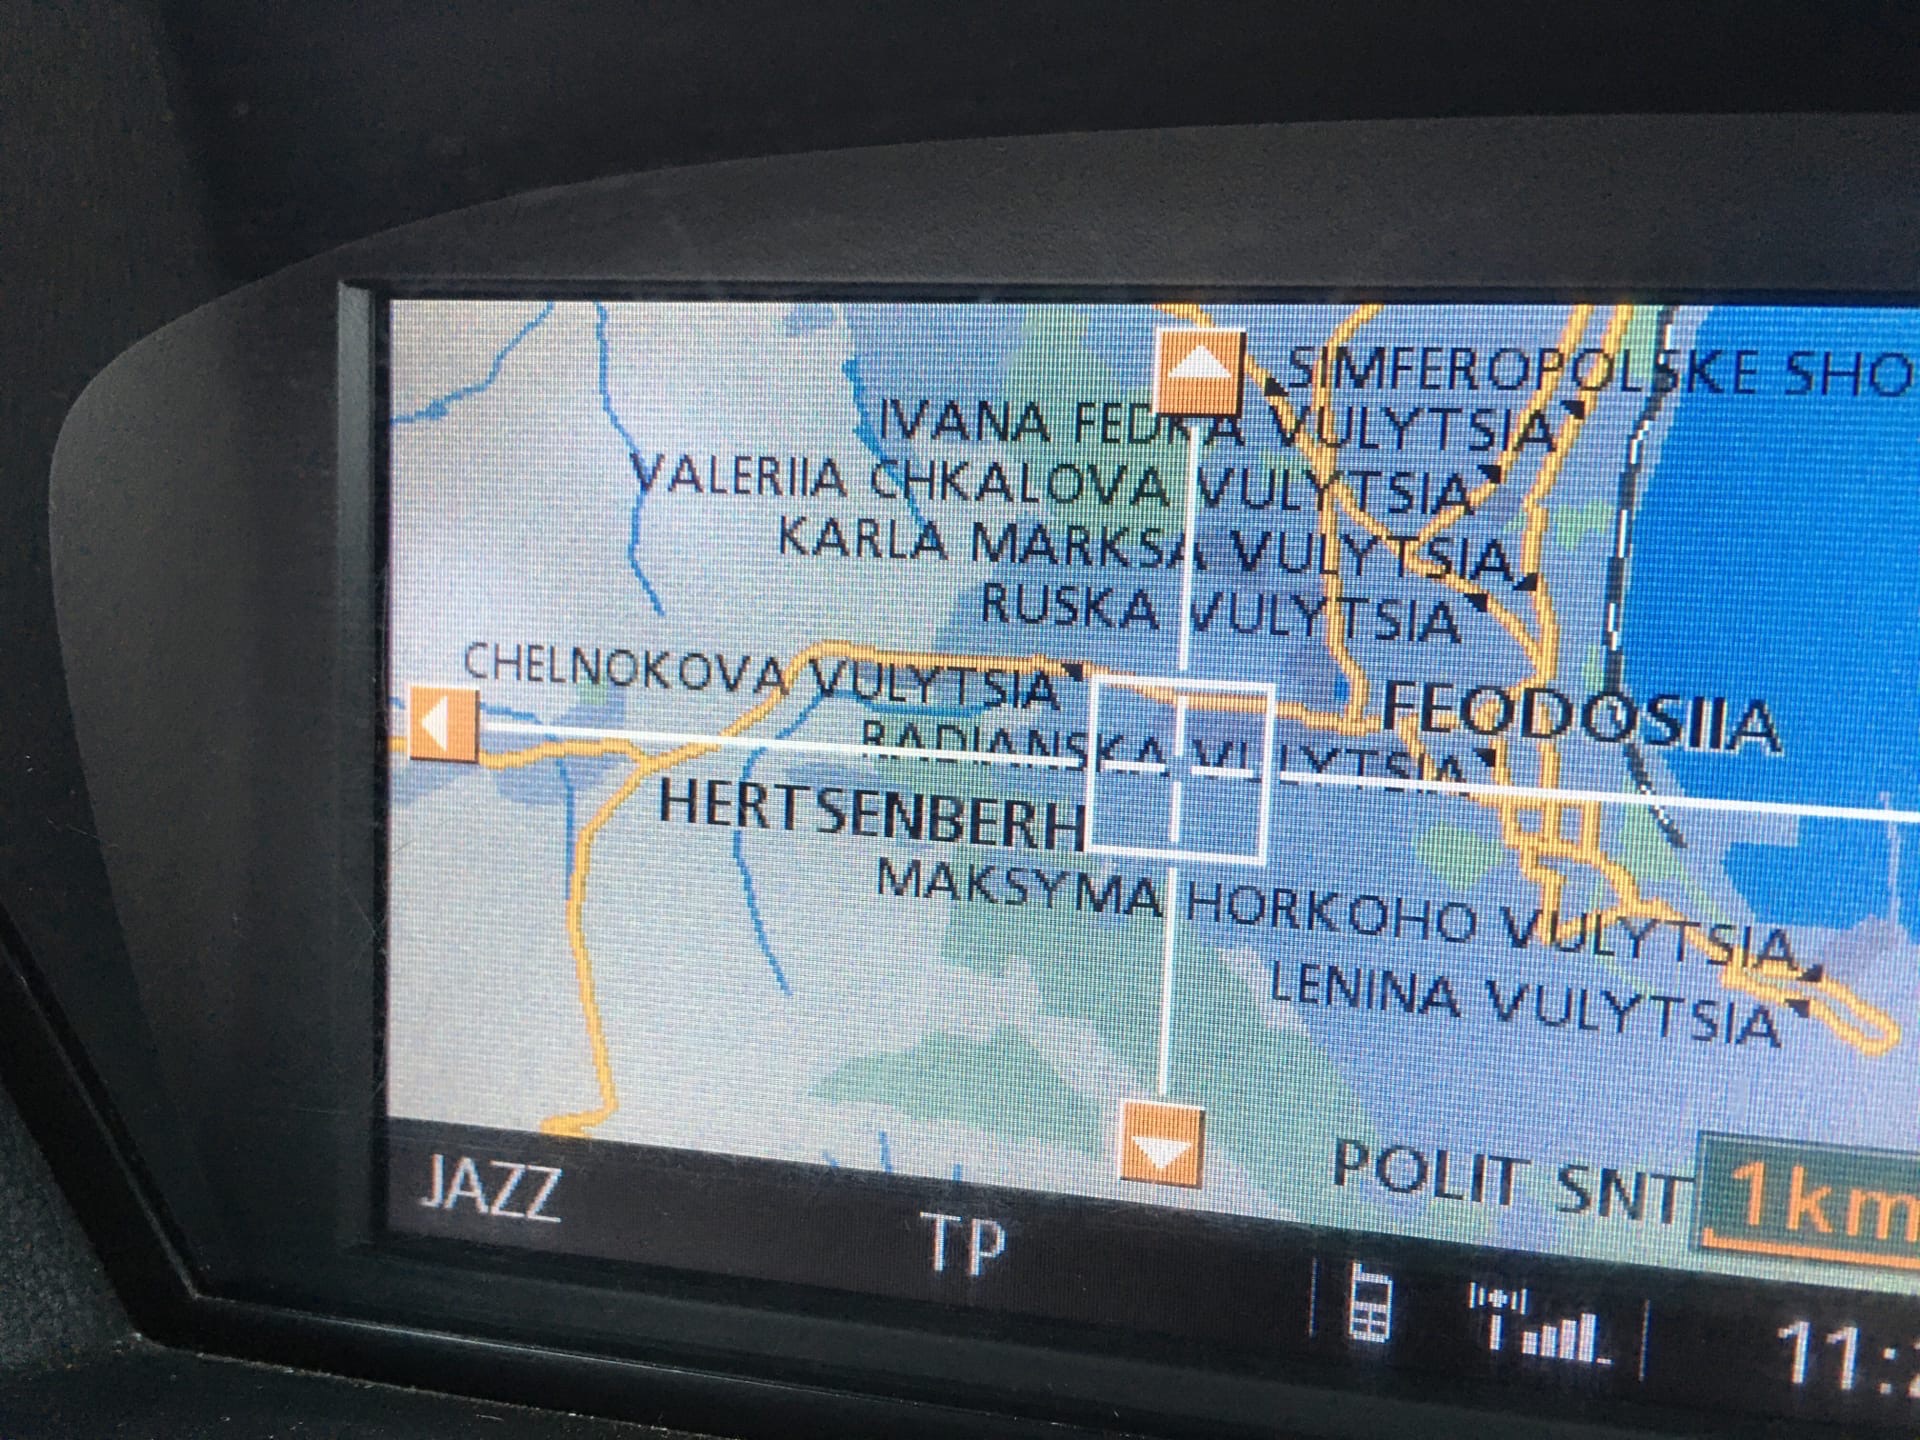 Село Пионерское в Феодосии на картах BMW назвали Герценбергом